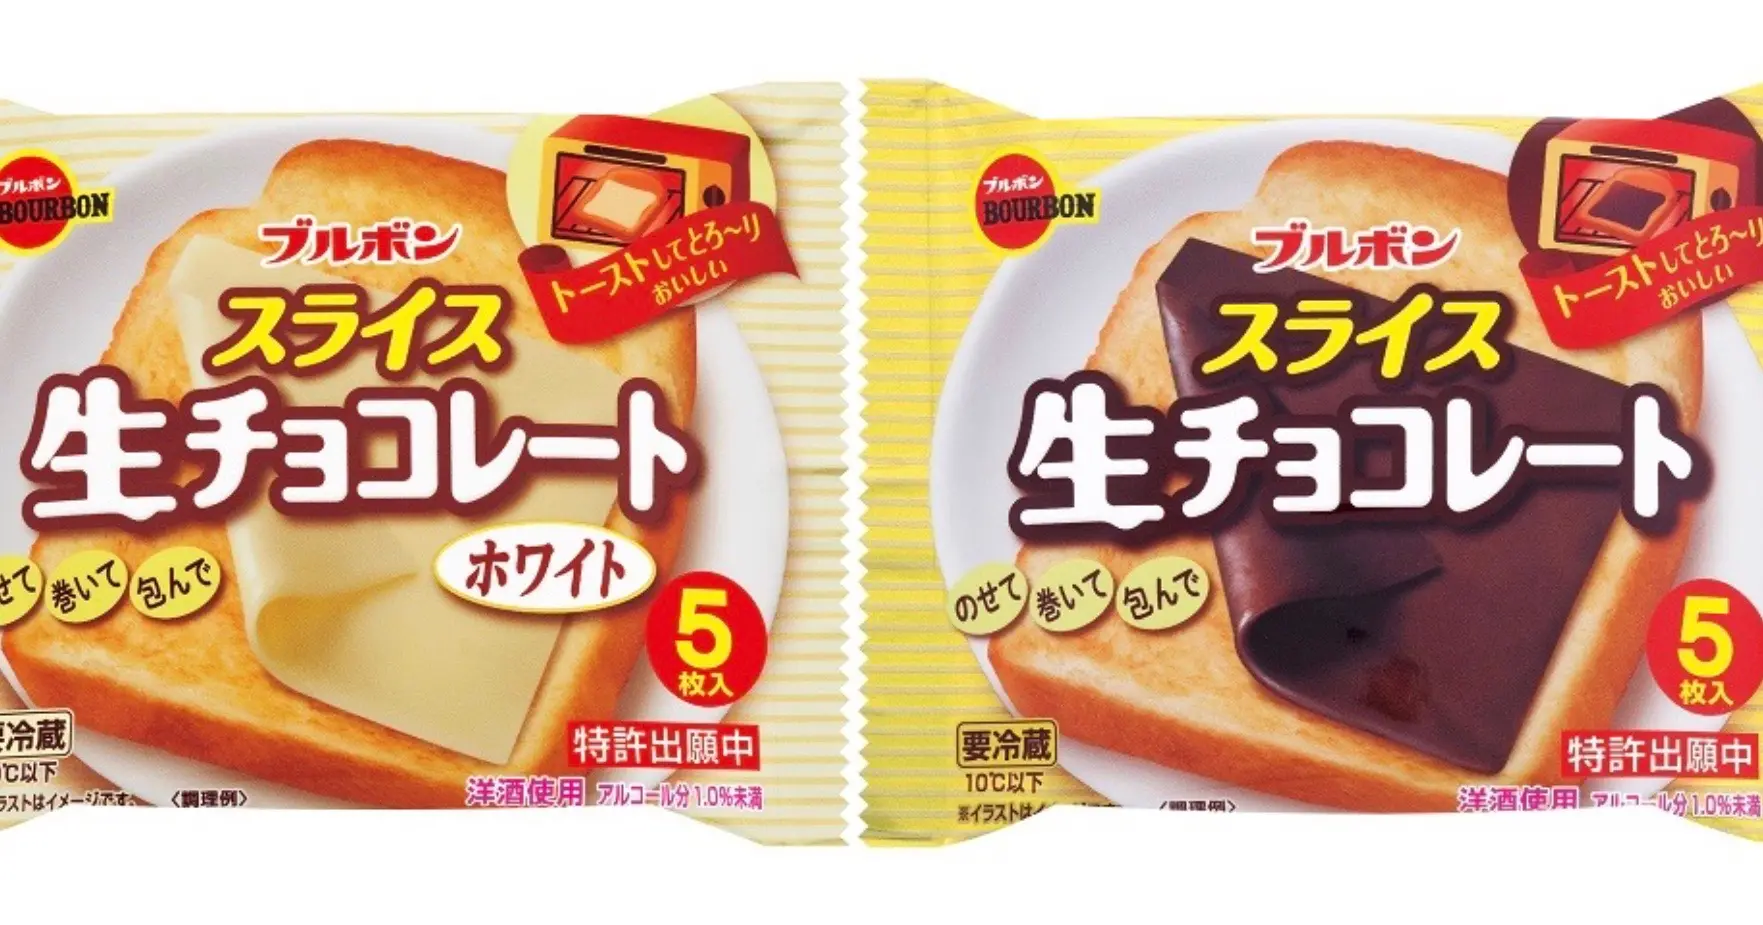 Le Japon a inventé des tranches de chocolat façon fromage à burger